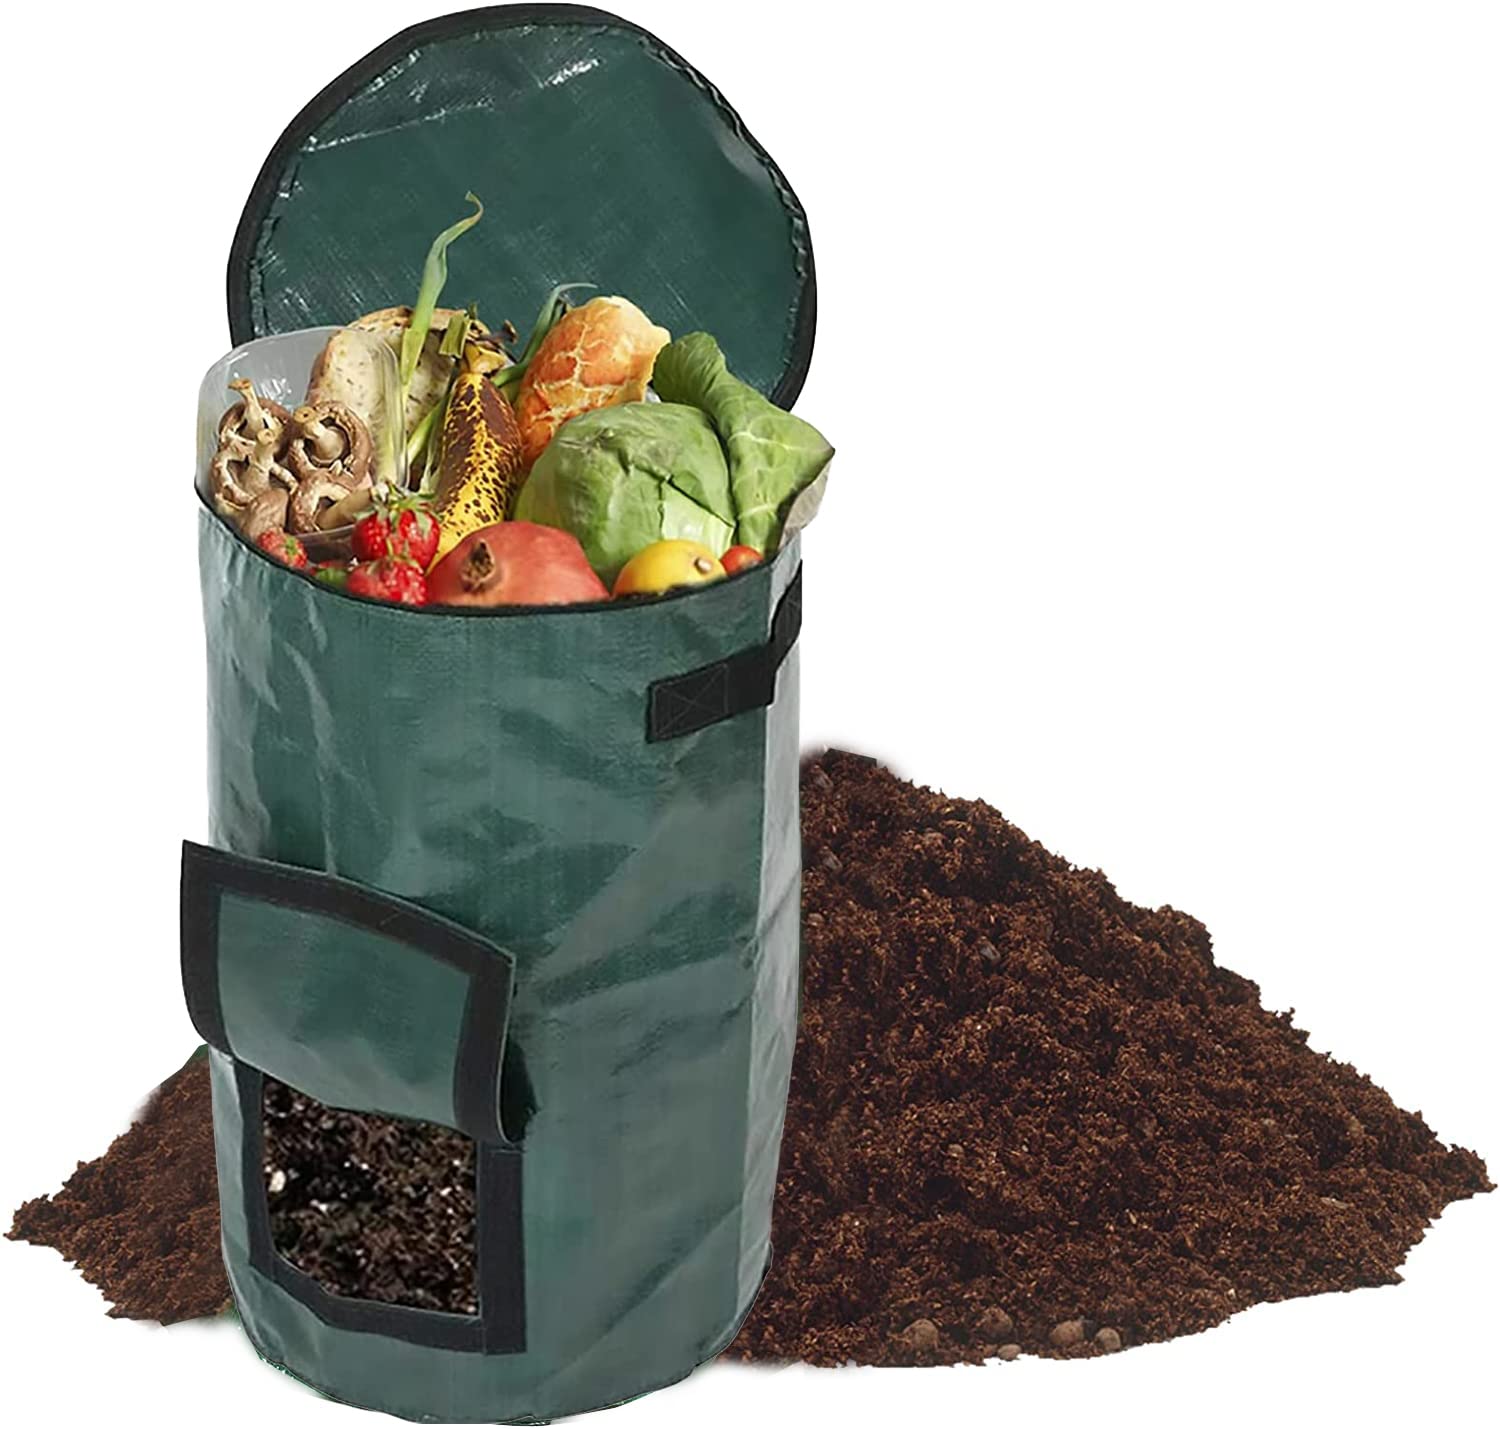 34 Gallon Garden Compost Bin Bag